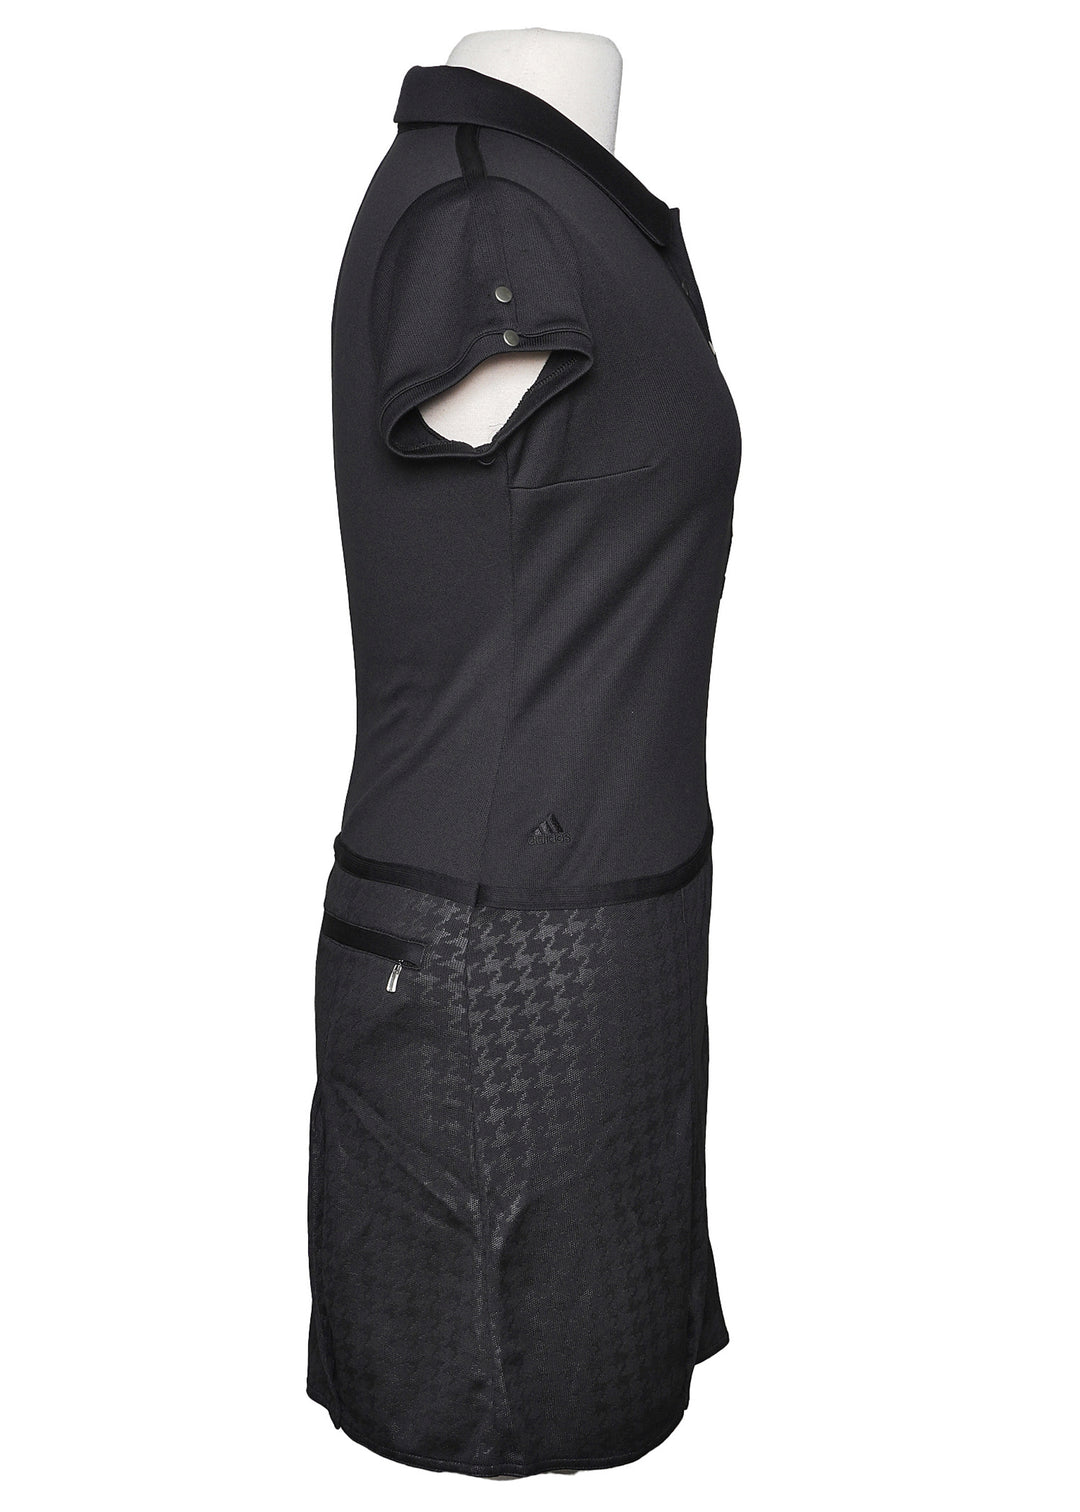 Adiddas Climalite Dress - Black/Silver - Size 4 - Skorzie